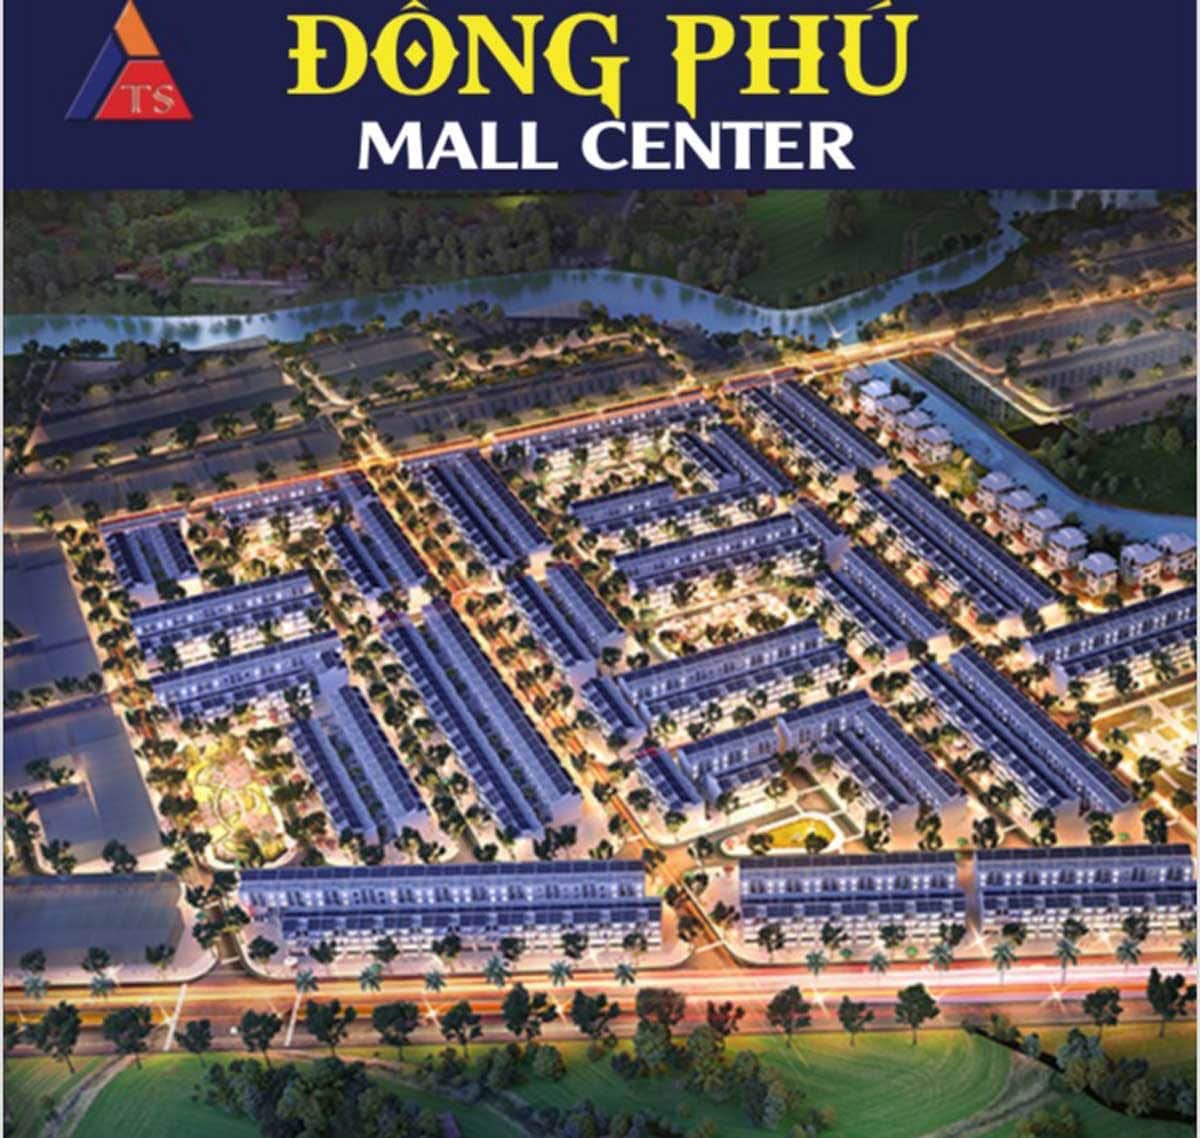 dong phu mall center - DỰ ÁN ĐỒNG PHÚ MALL CENTER ĐỒNG XOÀI BÌNH PHƯỚC